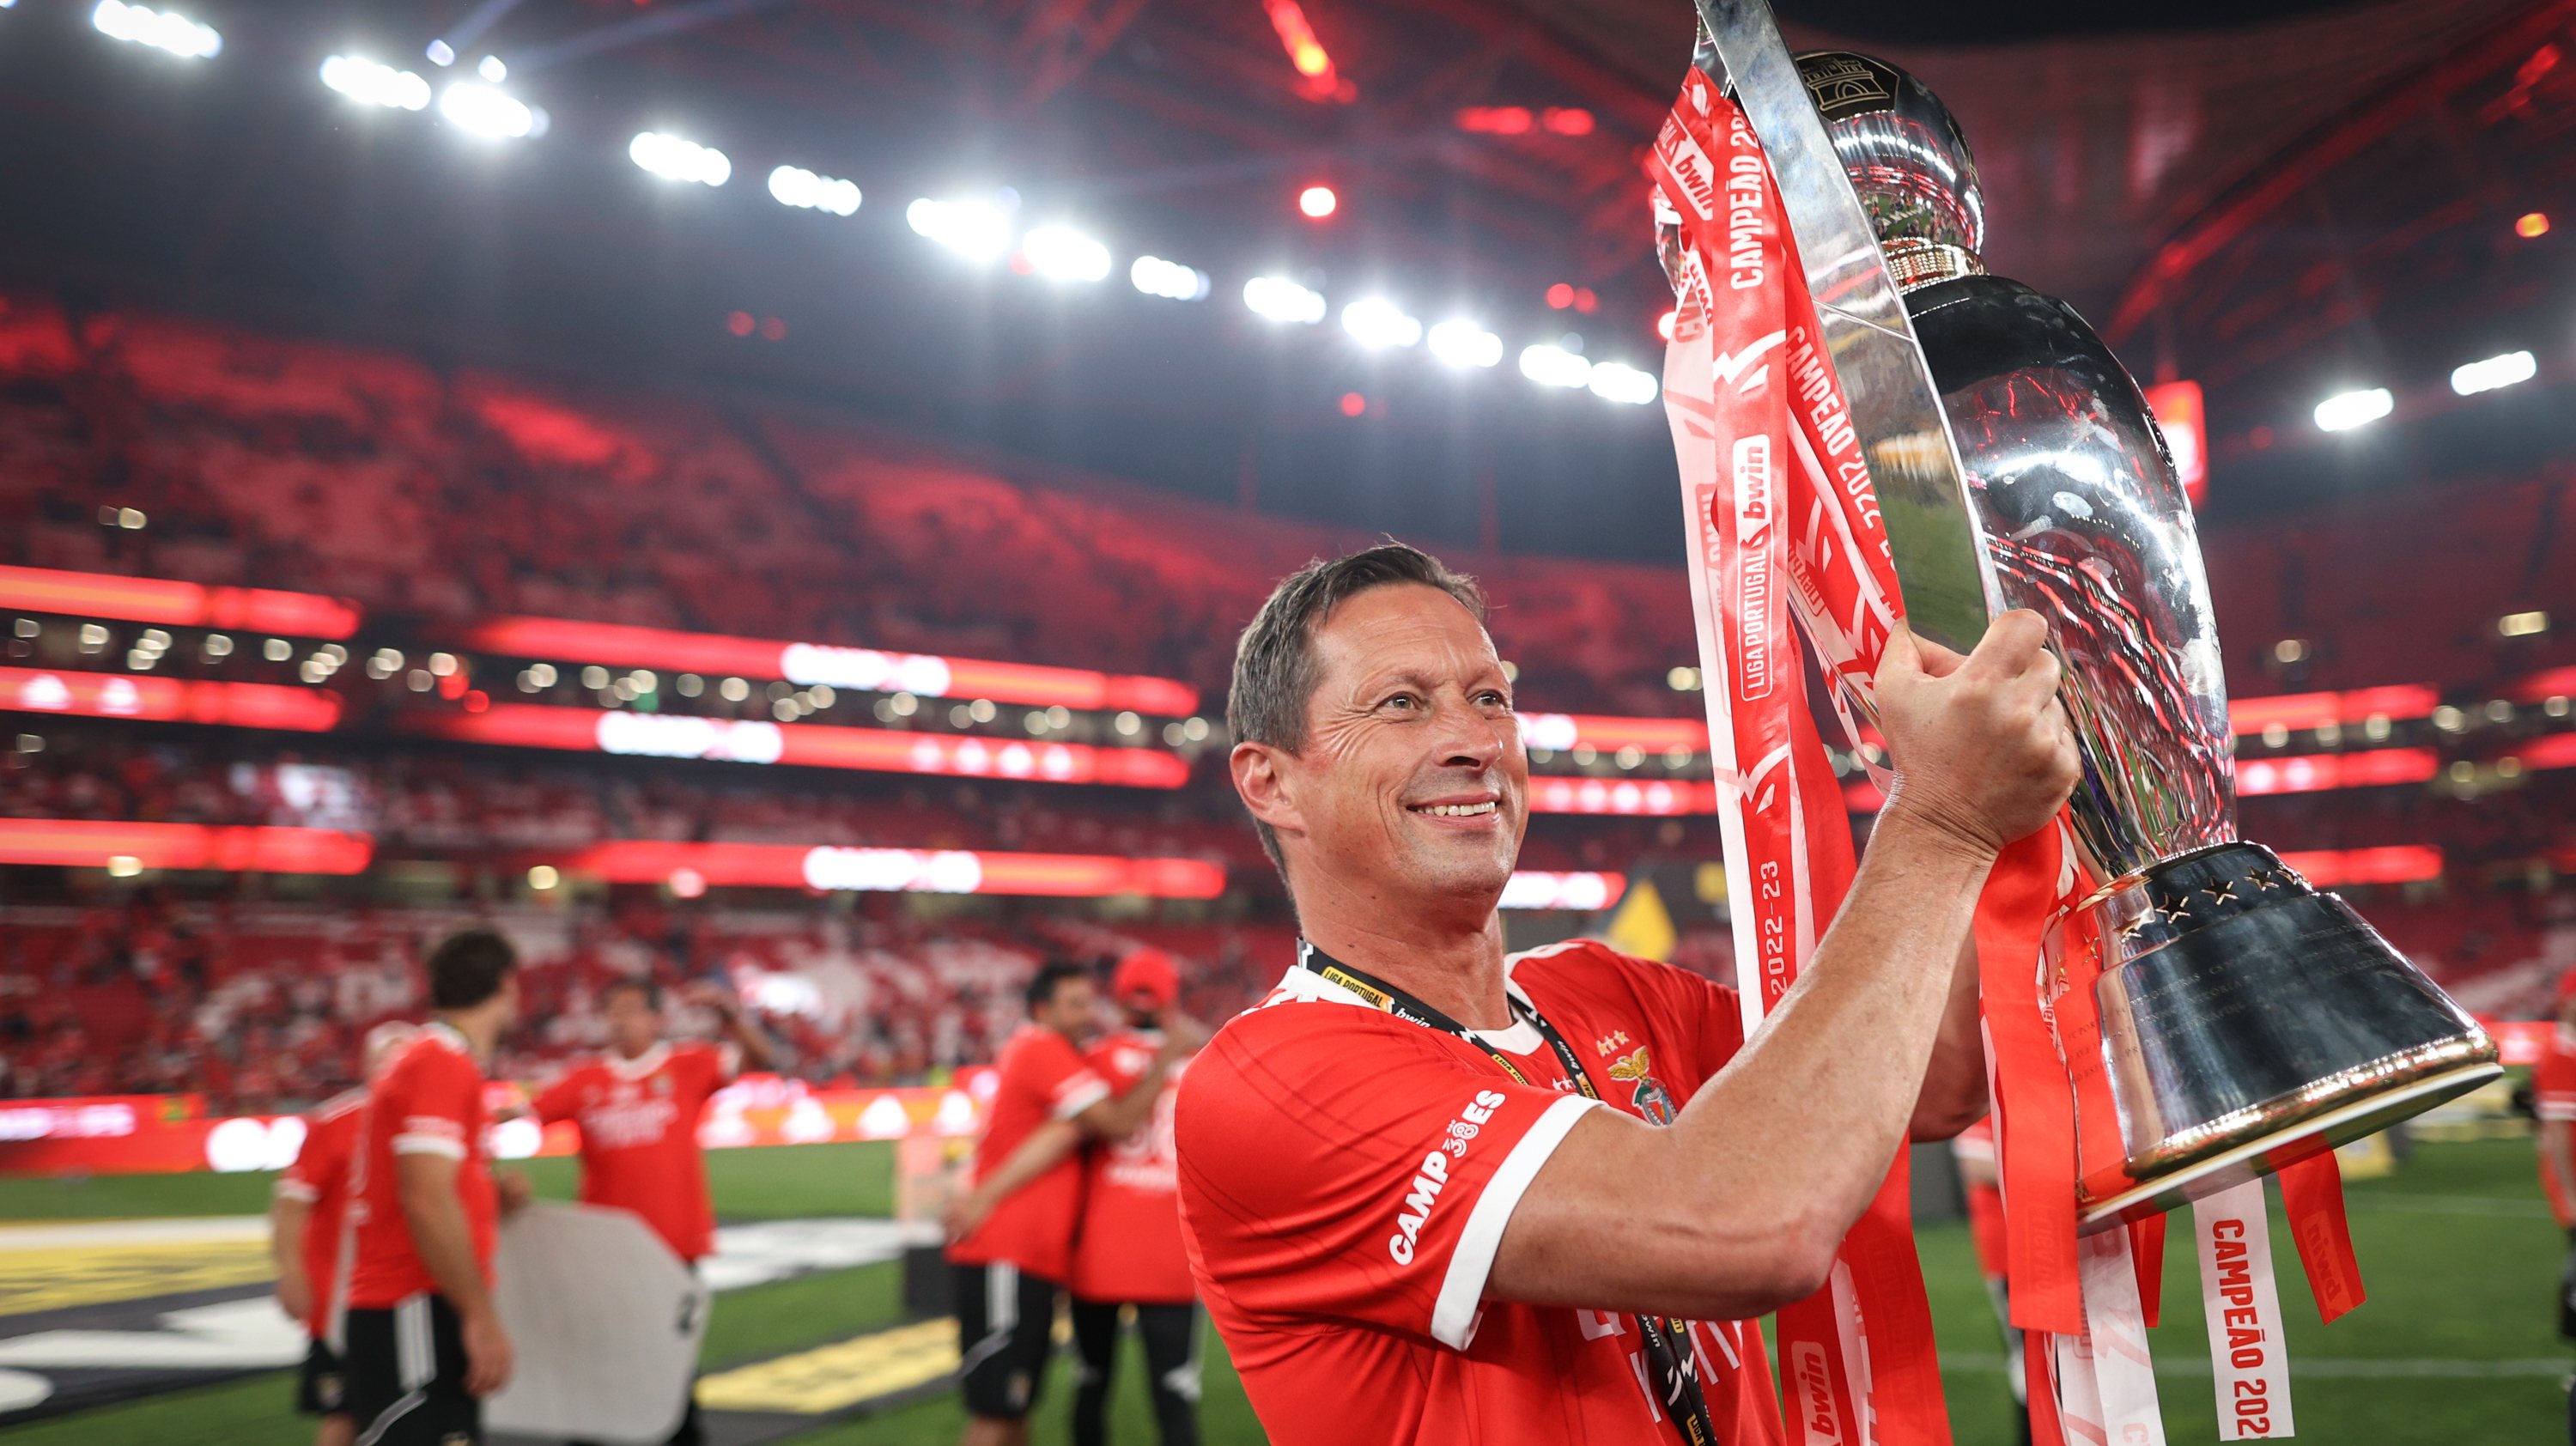 Futebol: Benfica sagrou-se Campeão de Portugal